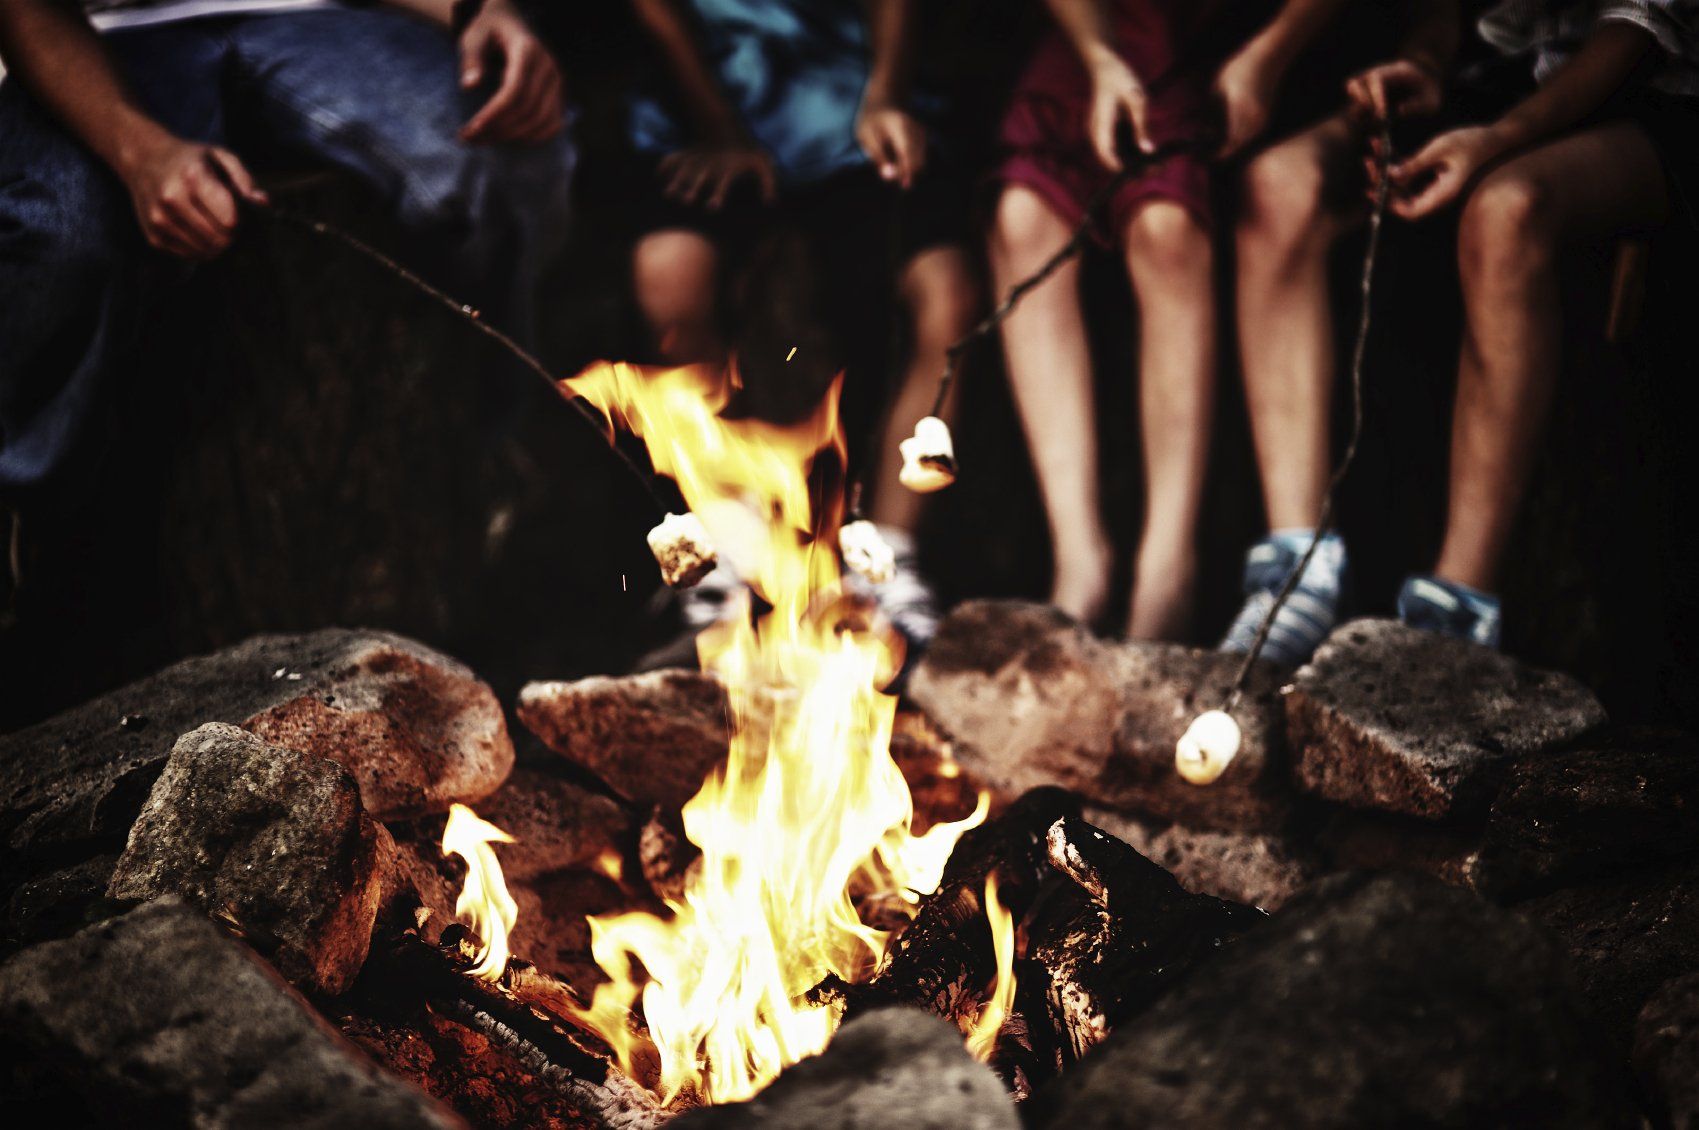 Mikroabenteuer für die Sommerferien Lagerfeuer, Kinder sitzen um ein Feuer